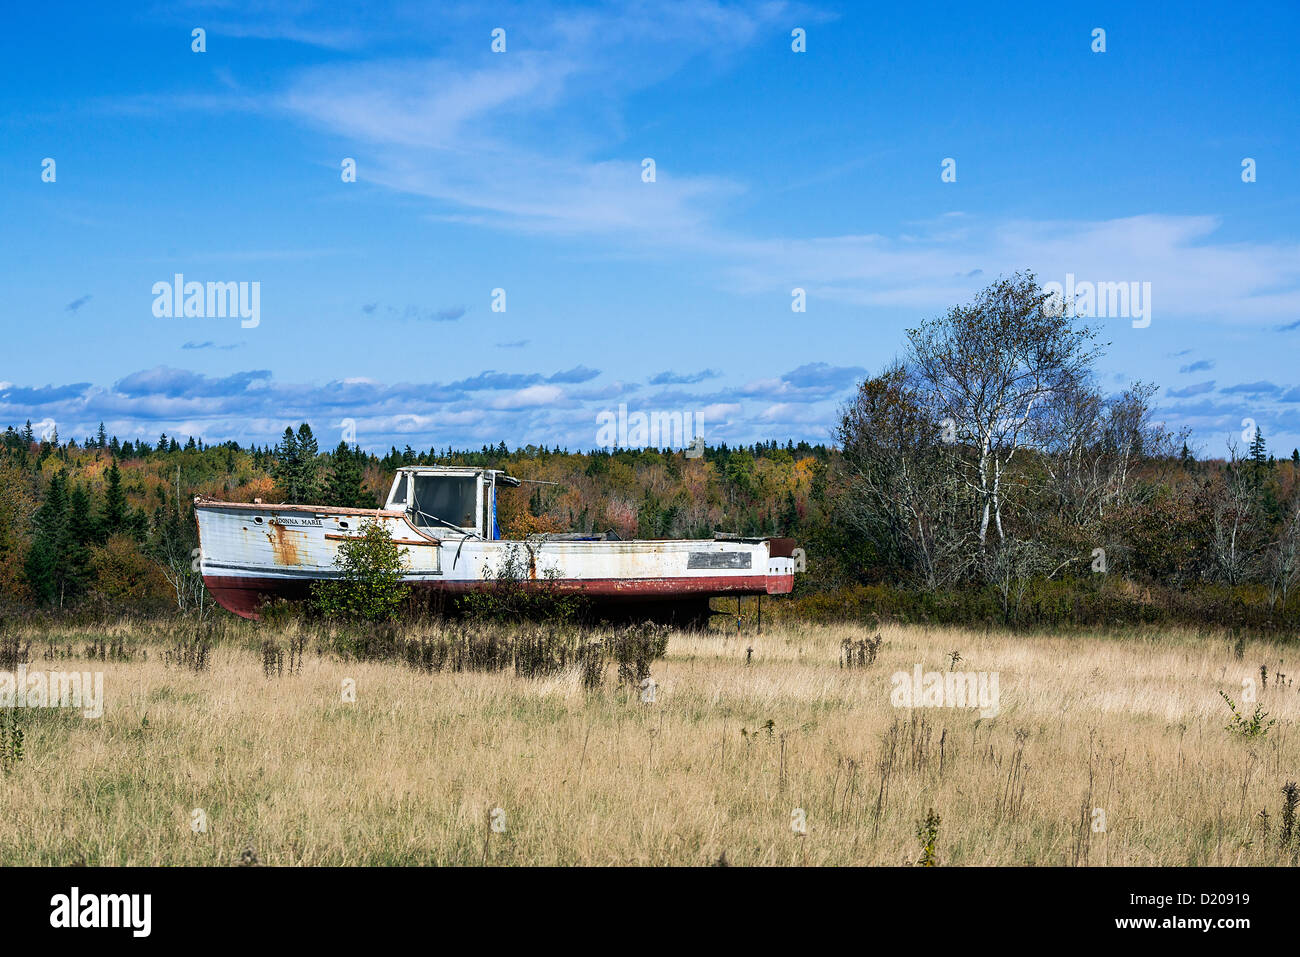 Abbandonato lobster boat in campo rurale, Maine, Stati Uniti d'America Foto Stock